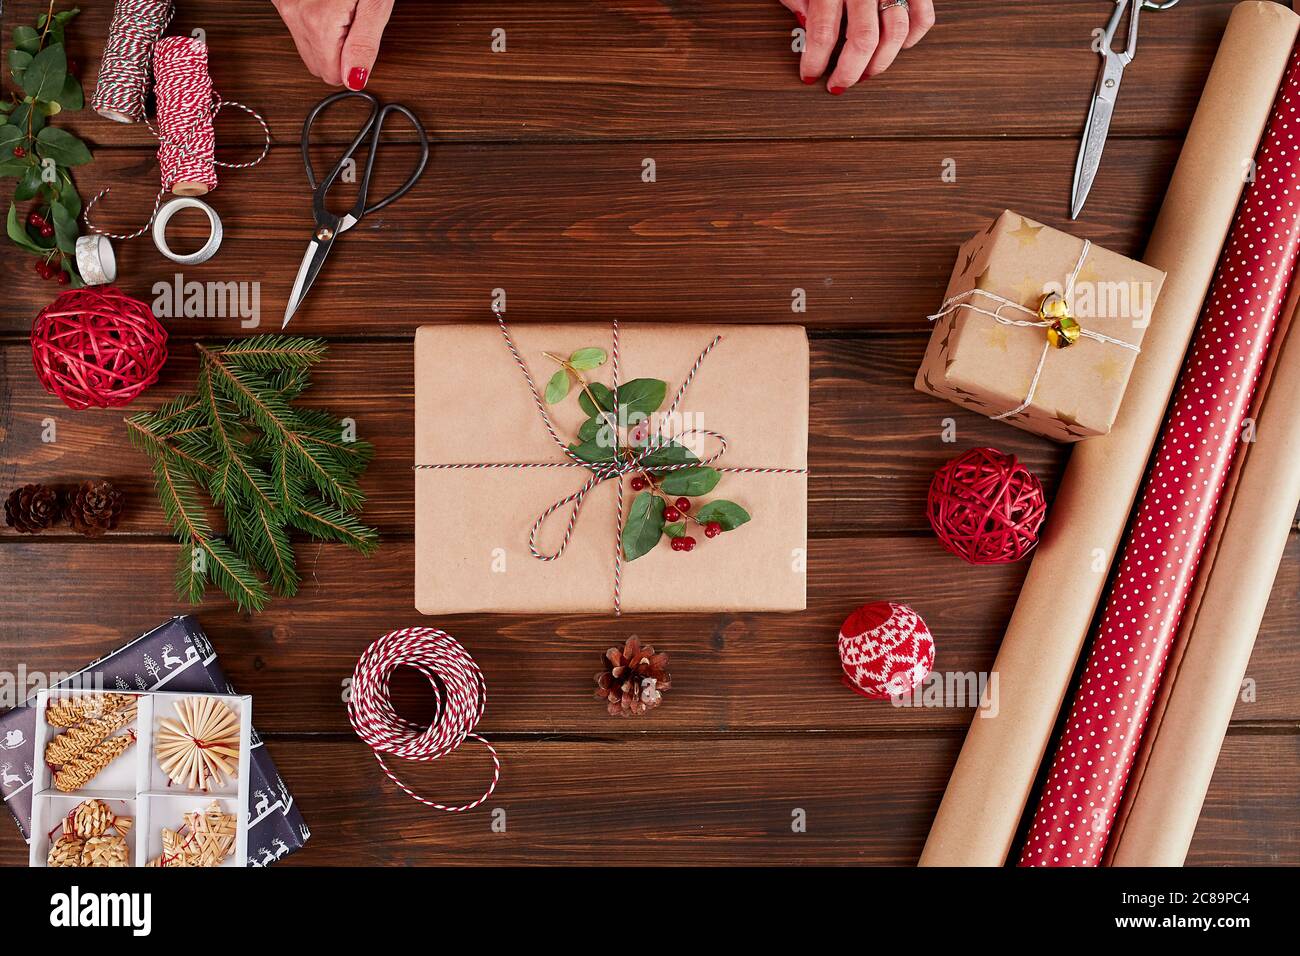 Plat de Noël de boîte cadeau de fabrication artisanale prête sur table rustique en bois avec rouleaux de papier d'emballage de couleur et de spécialité, cônes de pin, branches de sapin et Banque D'Images